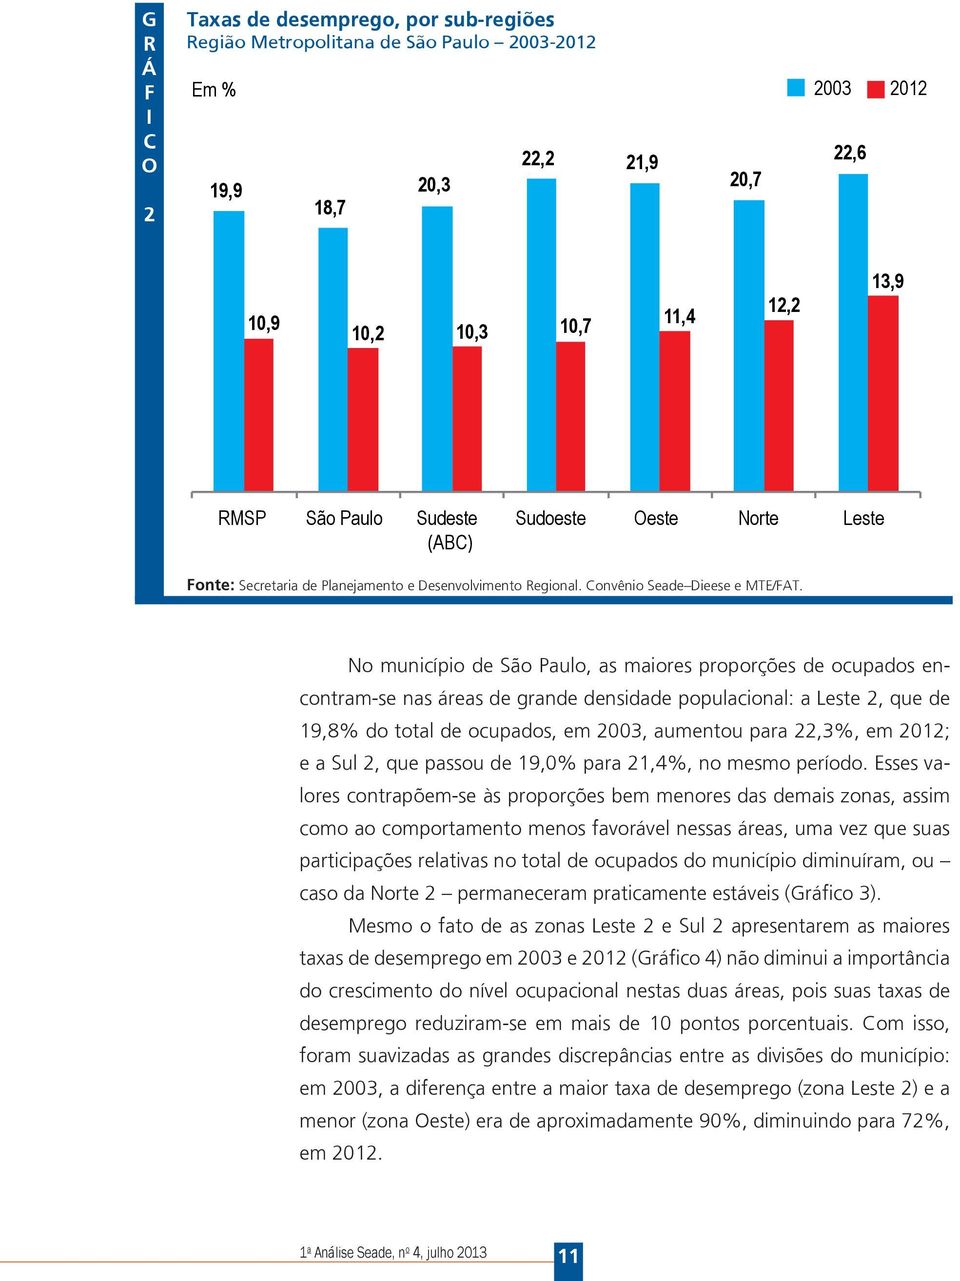 No município de São Paulo, as maiores proporções de ocupados encontram-se nas áreas de grande densidade populacional: a Leste 2, que de 19,8% do total de ocupados, em 2003, aumentou para 22,3%, em